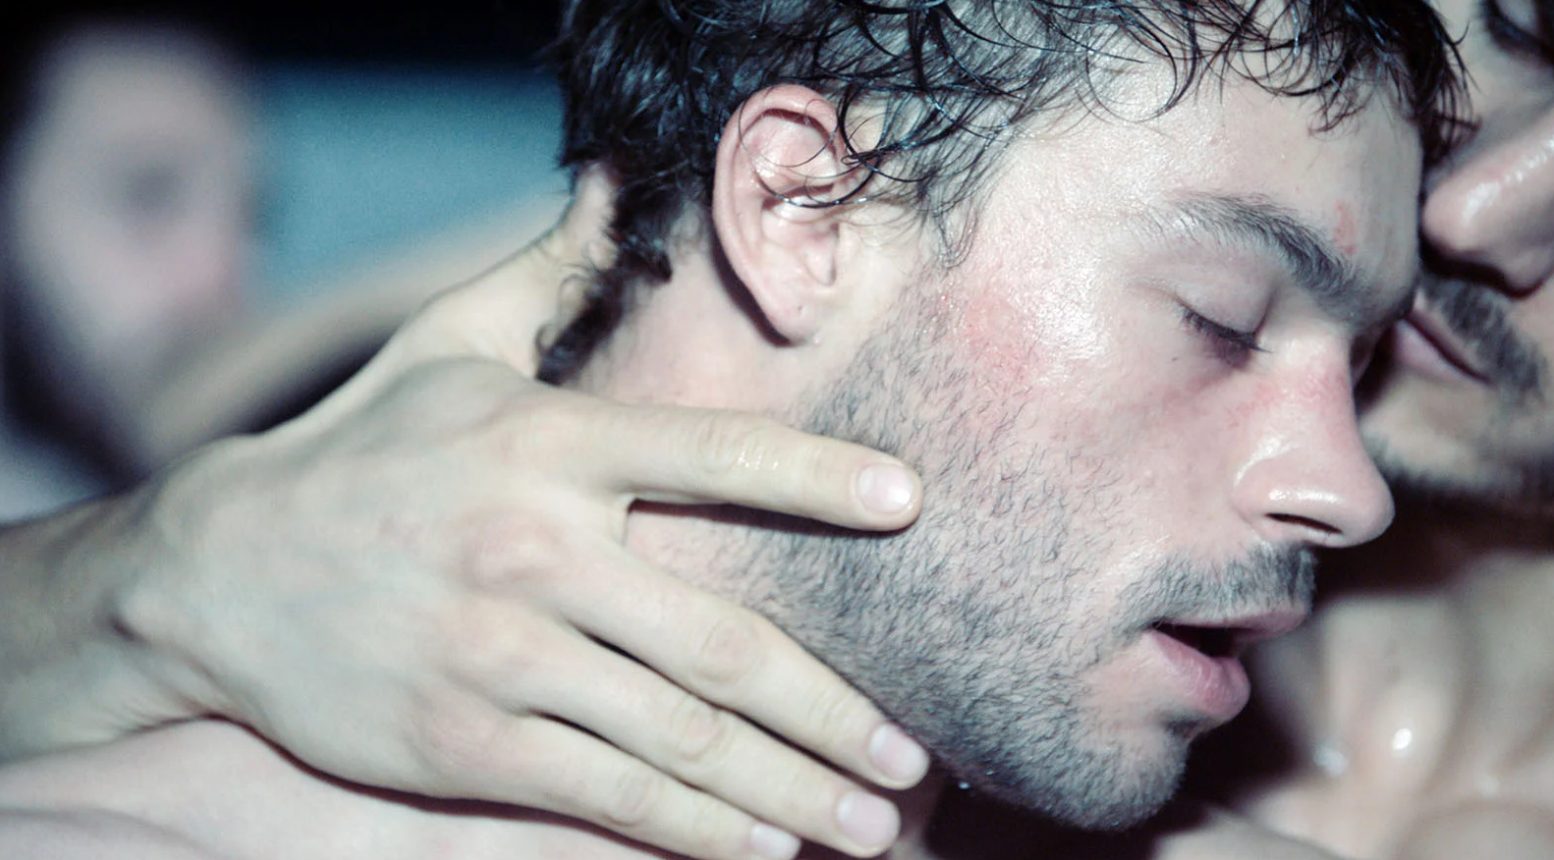 Gros plan sur un homme (Felix Maritaud) danse couvert de sueur et enlacé avec un garçon. Image issue du film "Sauvage" réalisé par Camille Vidal-Naquet.